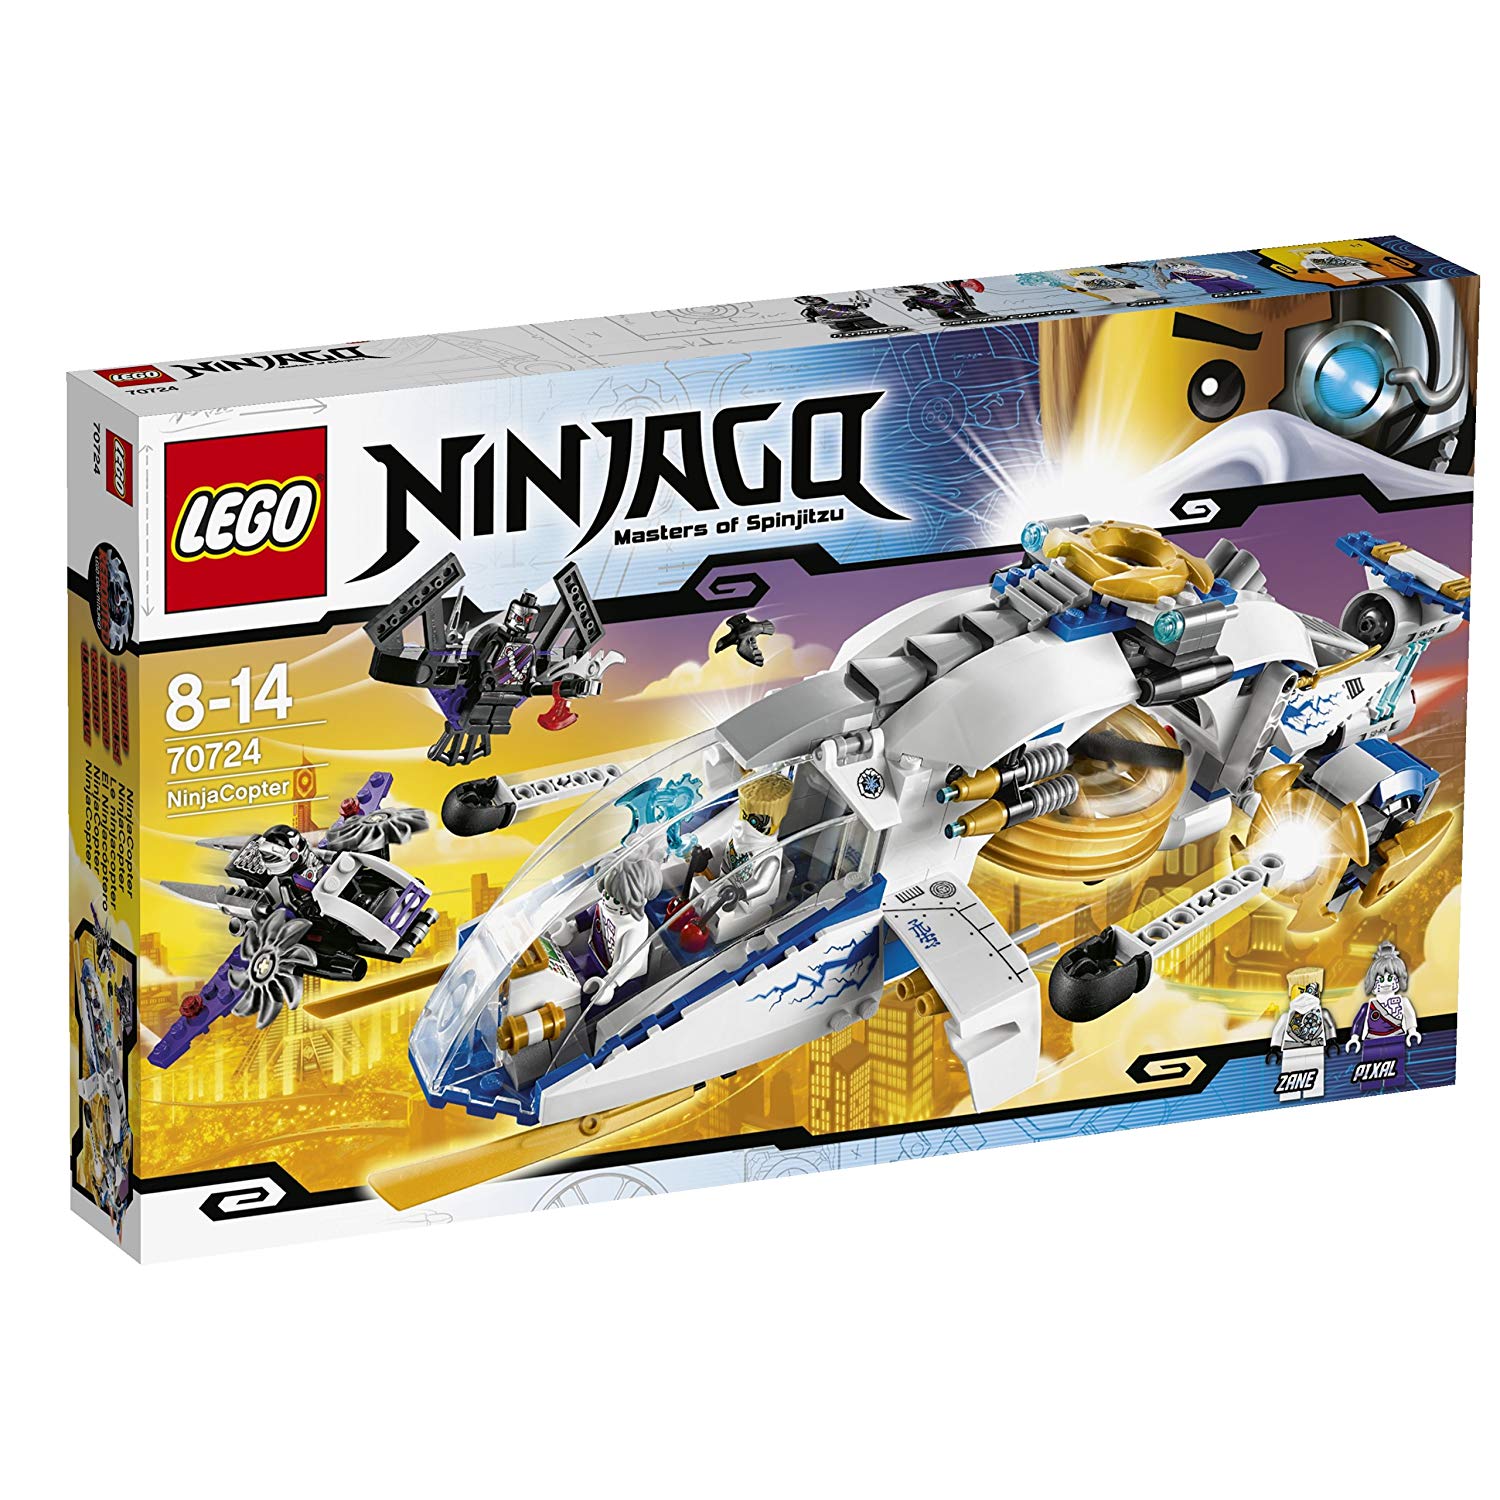 Lego Ninjago Ninjacopter